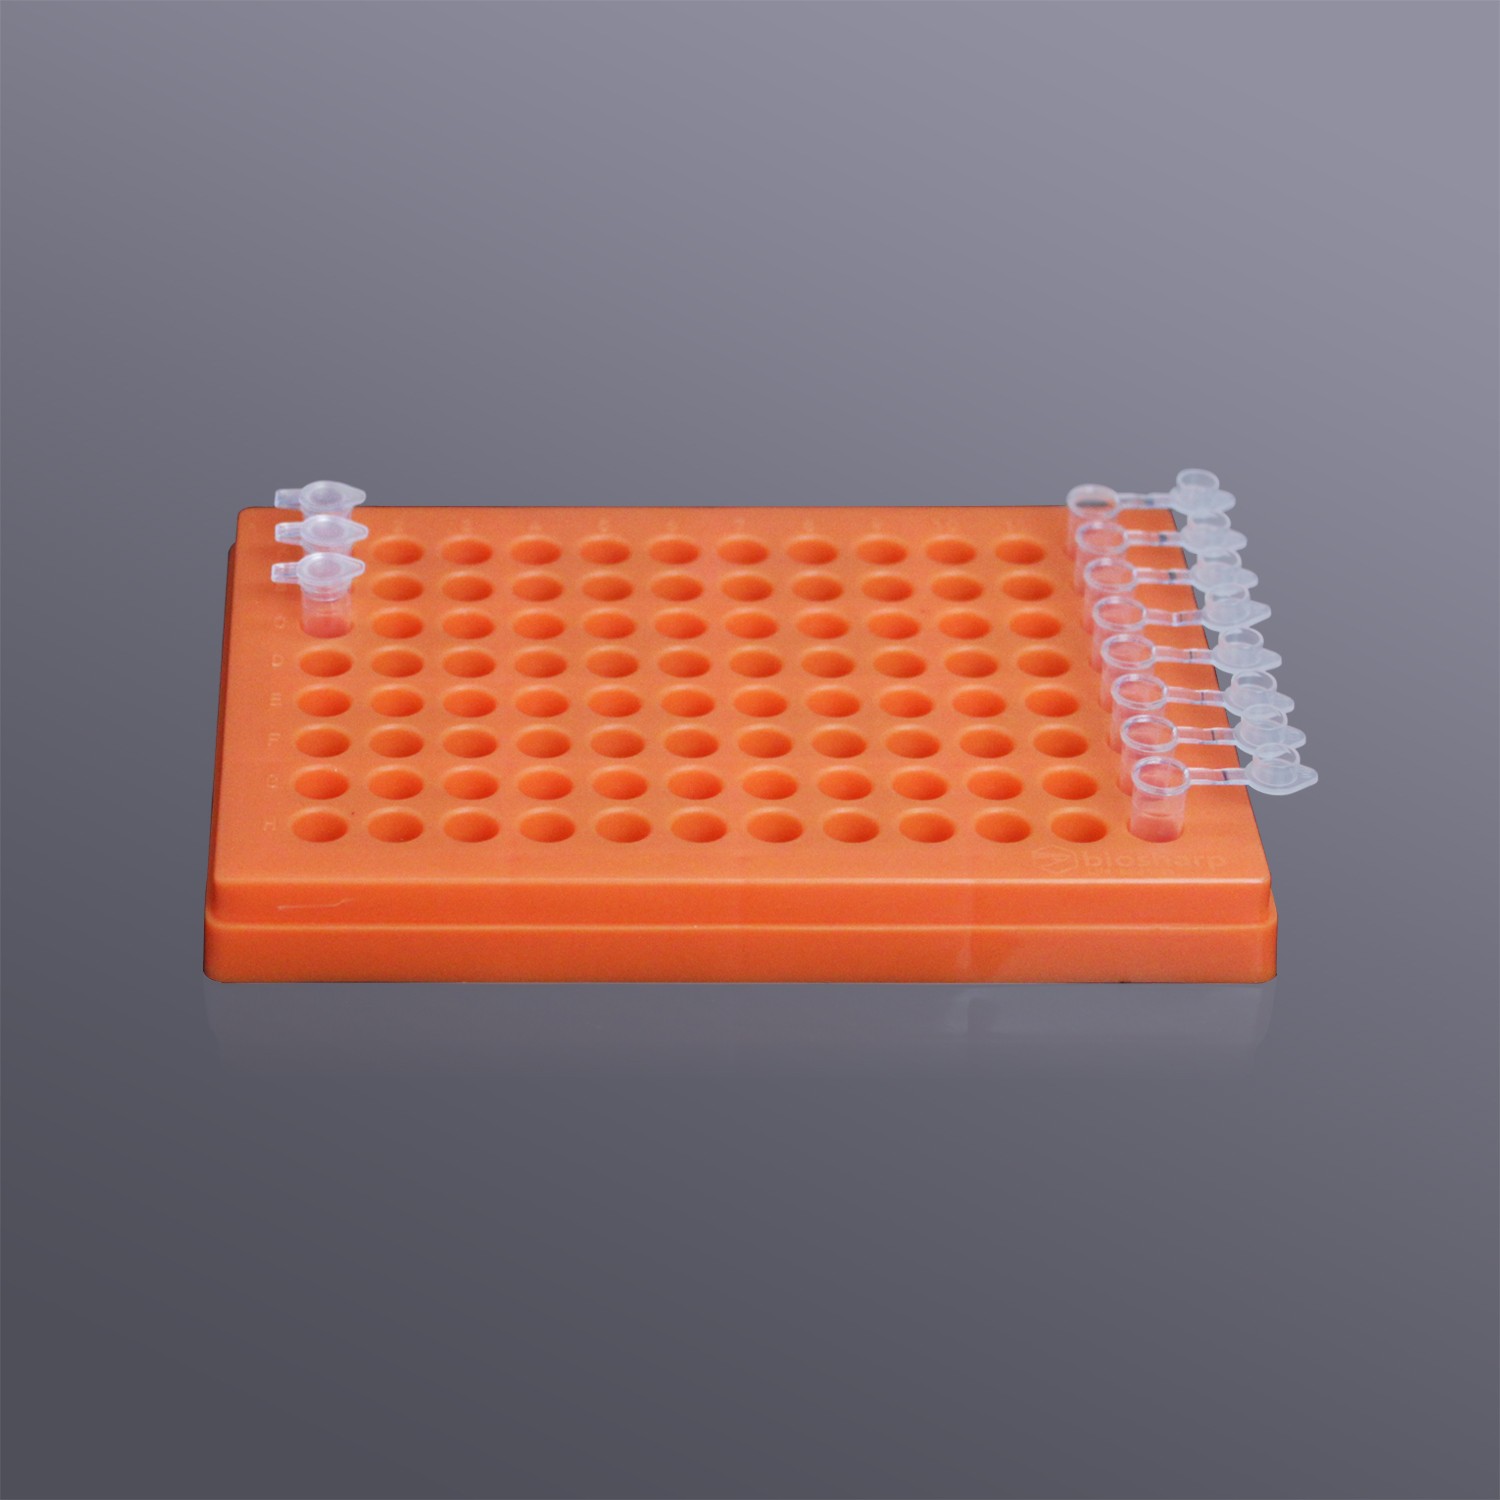 Biosharp BS-02-PB96-PC-O 0.2ml薄壁管盒(PC),橙色